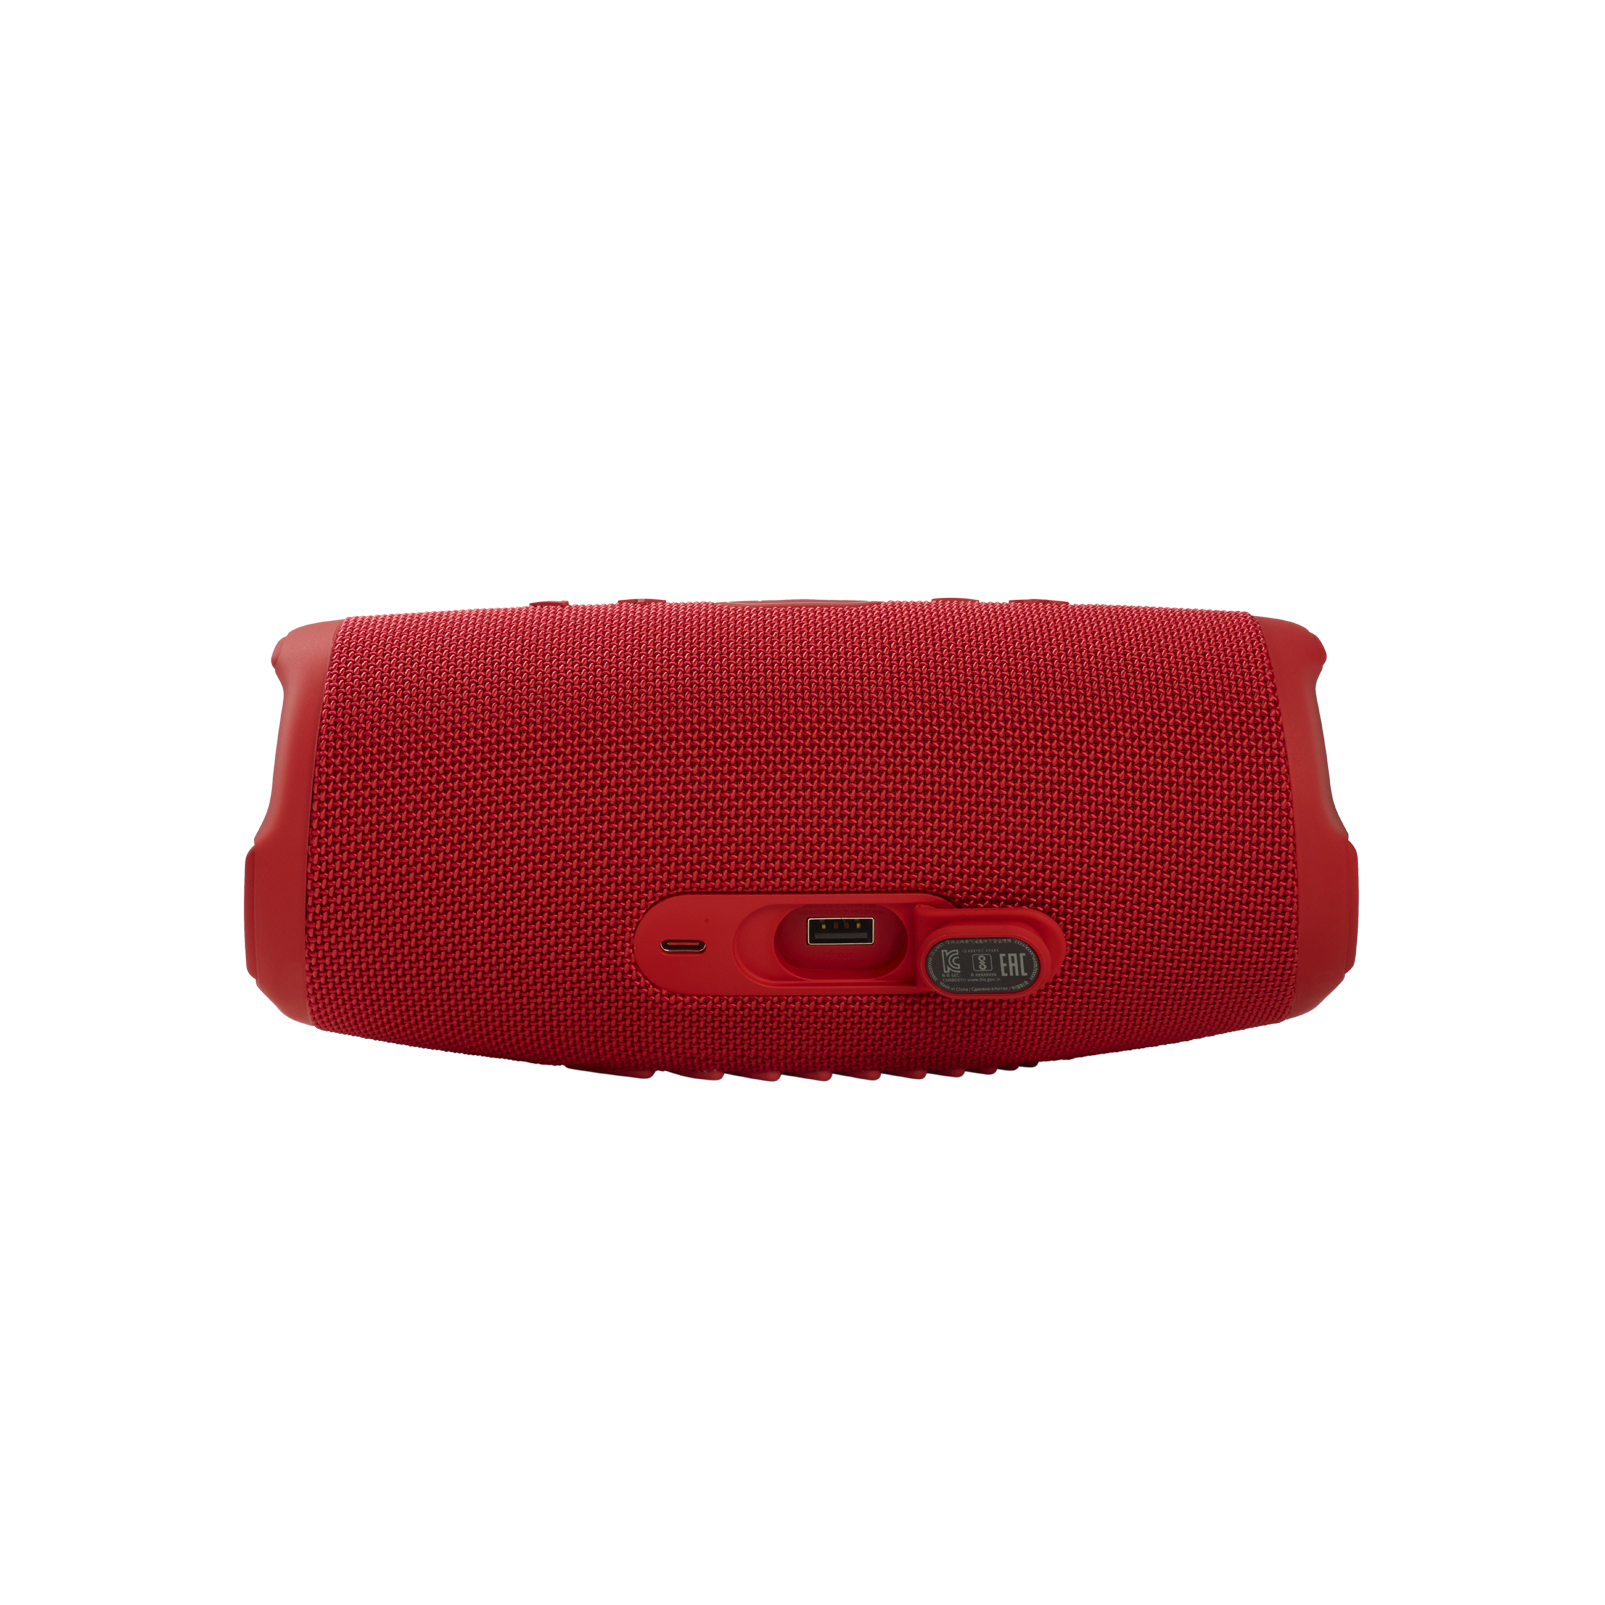 JBL Charge 5 - Red - Portable Waterproof Speaker with Powerbank - Detailshot 1